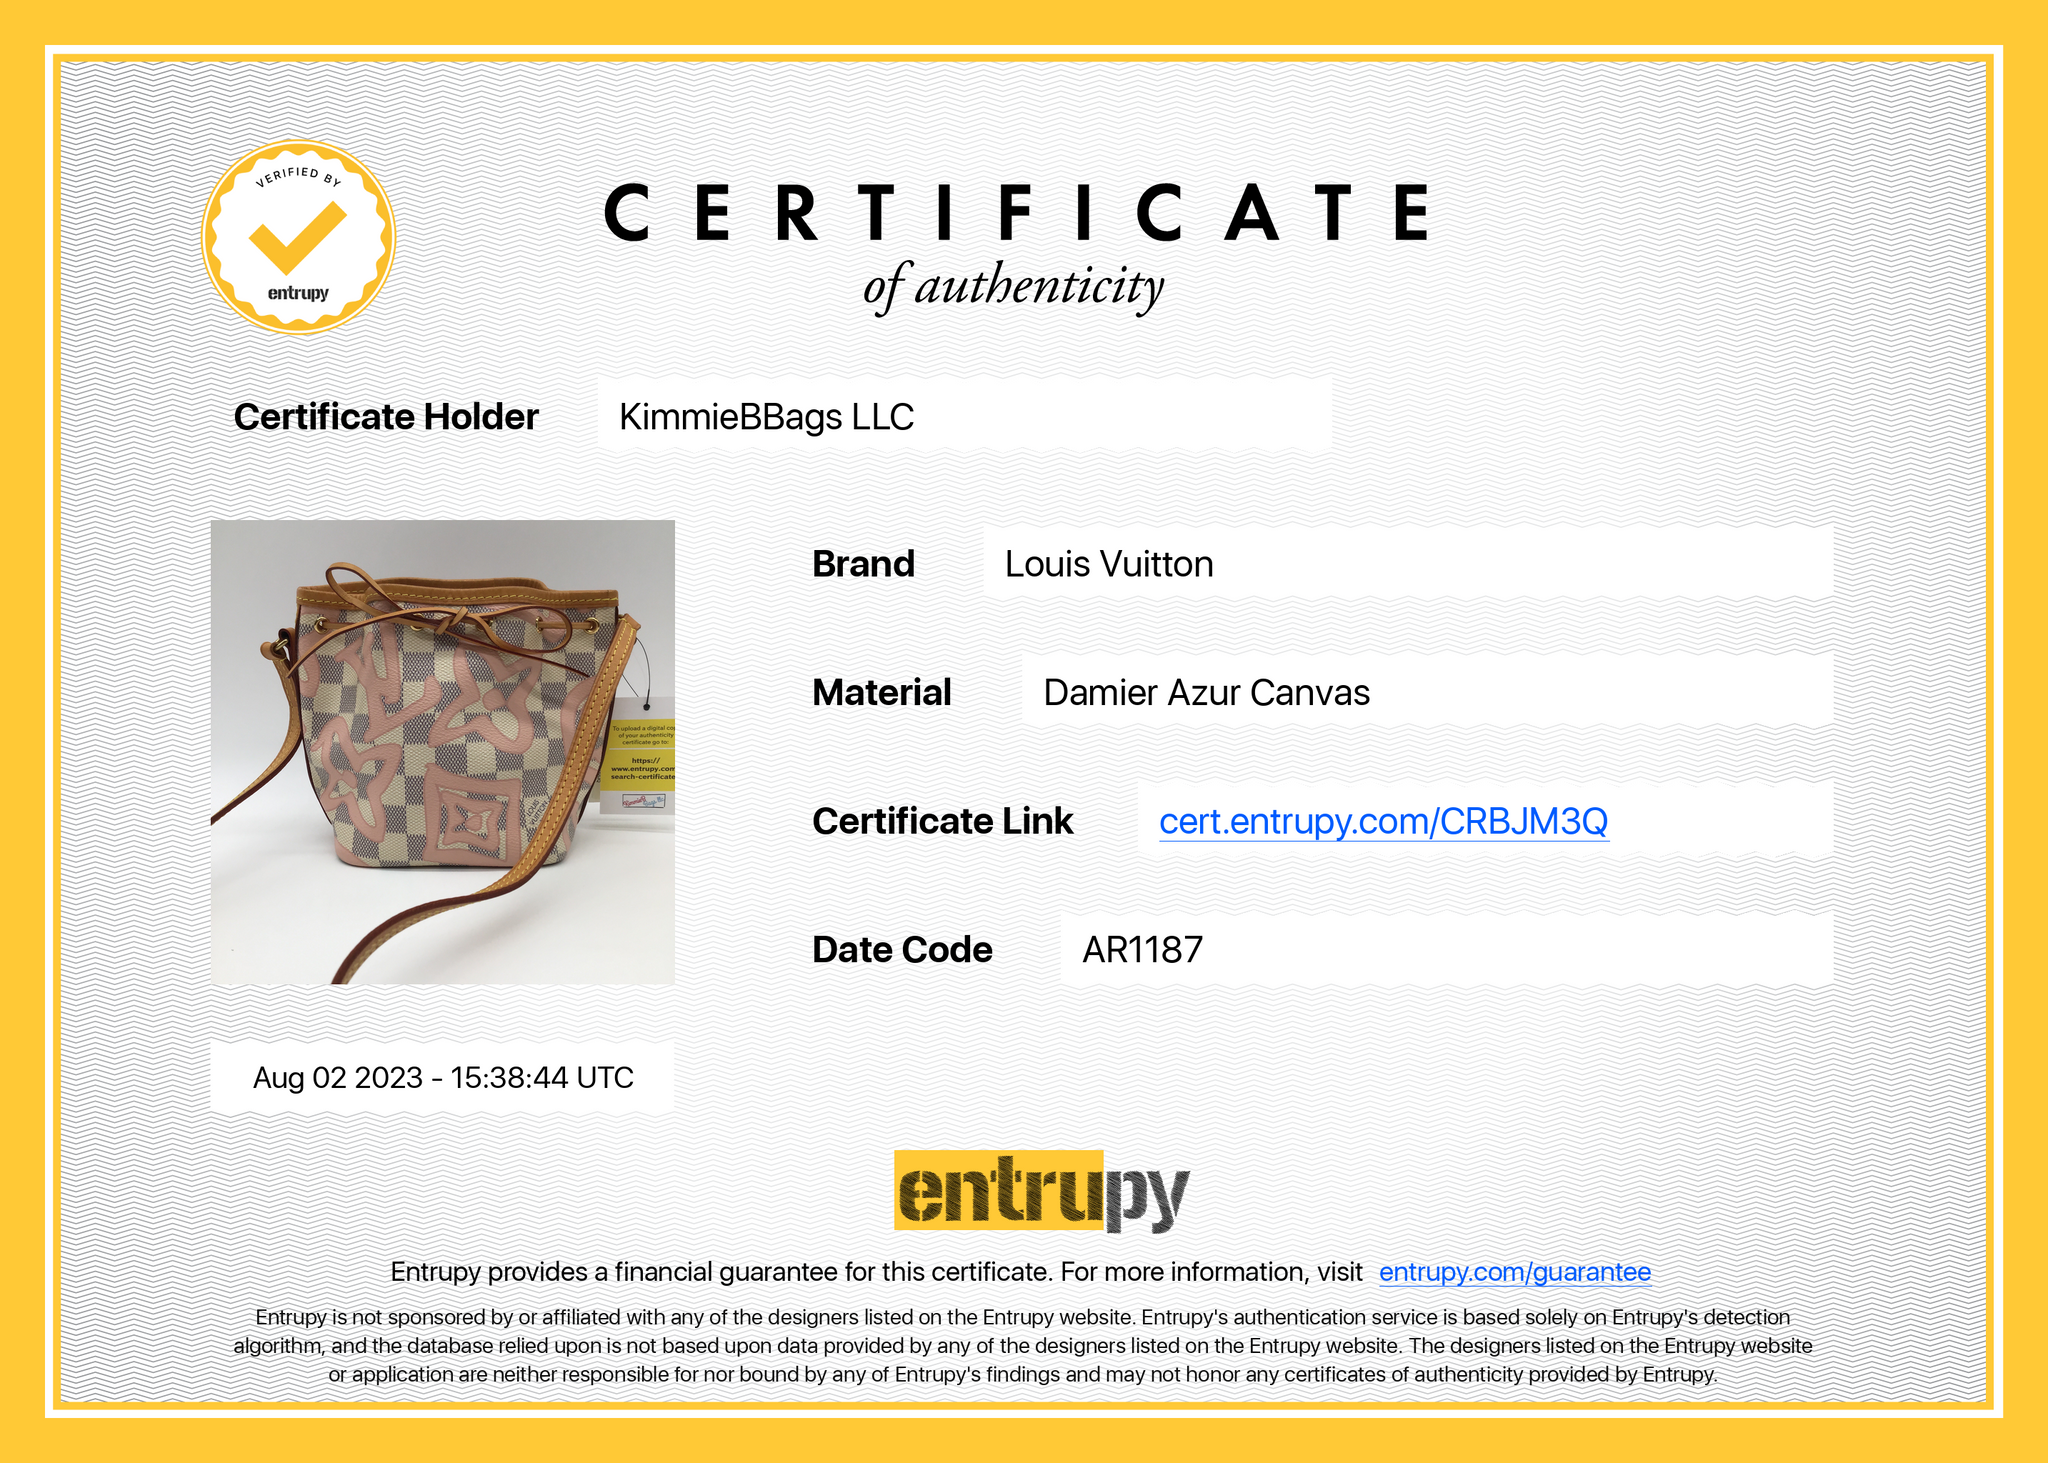 Auth Louis Vuitton Damier Azur Noe Shoulder bag 1D280160n